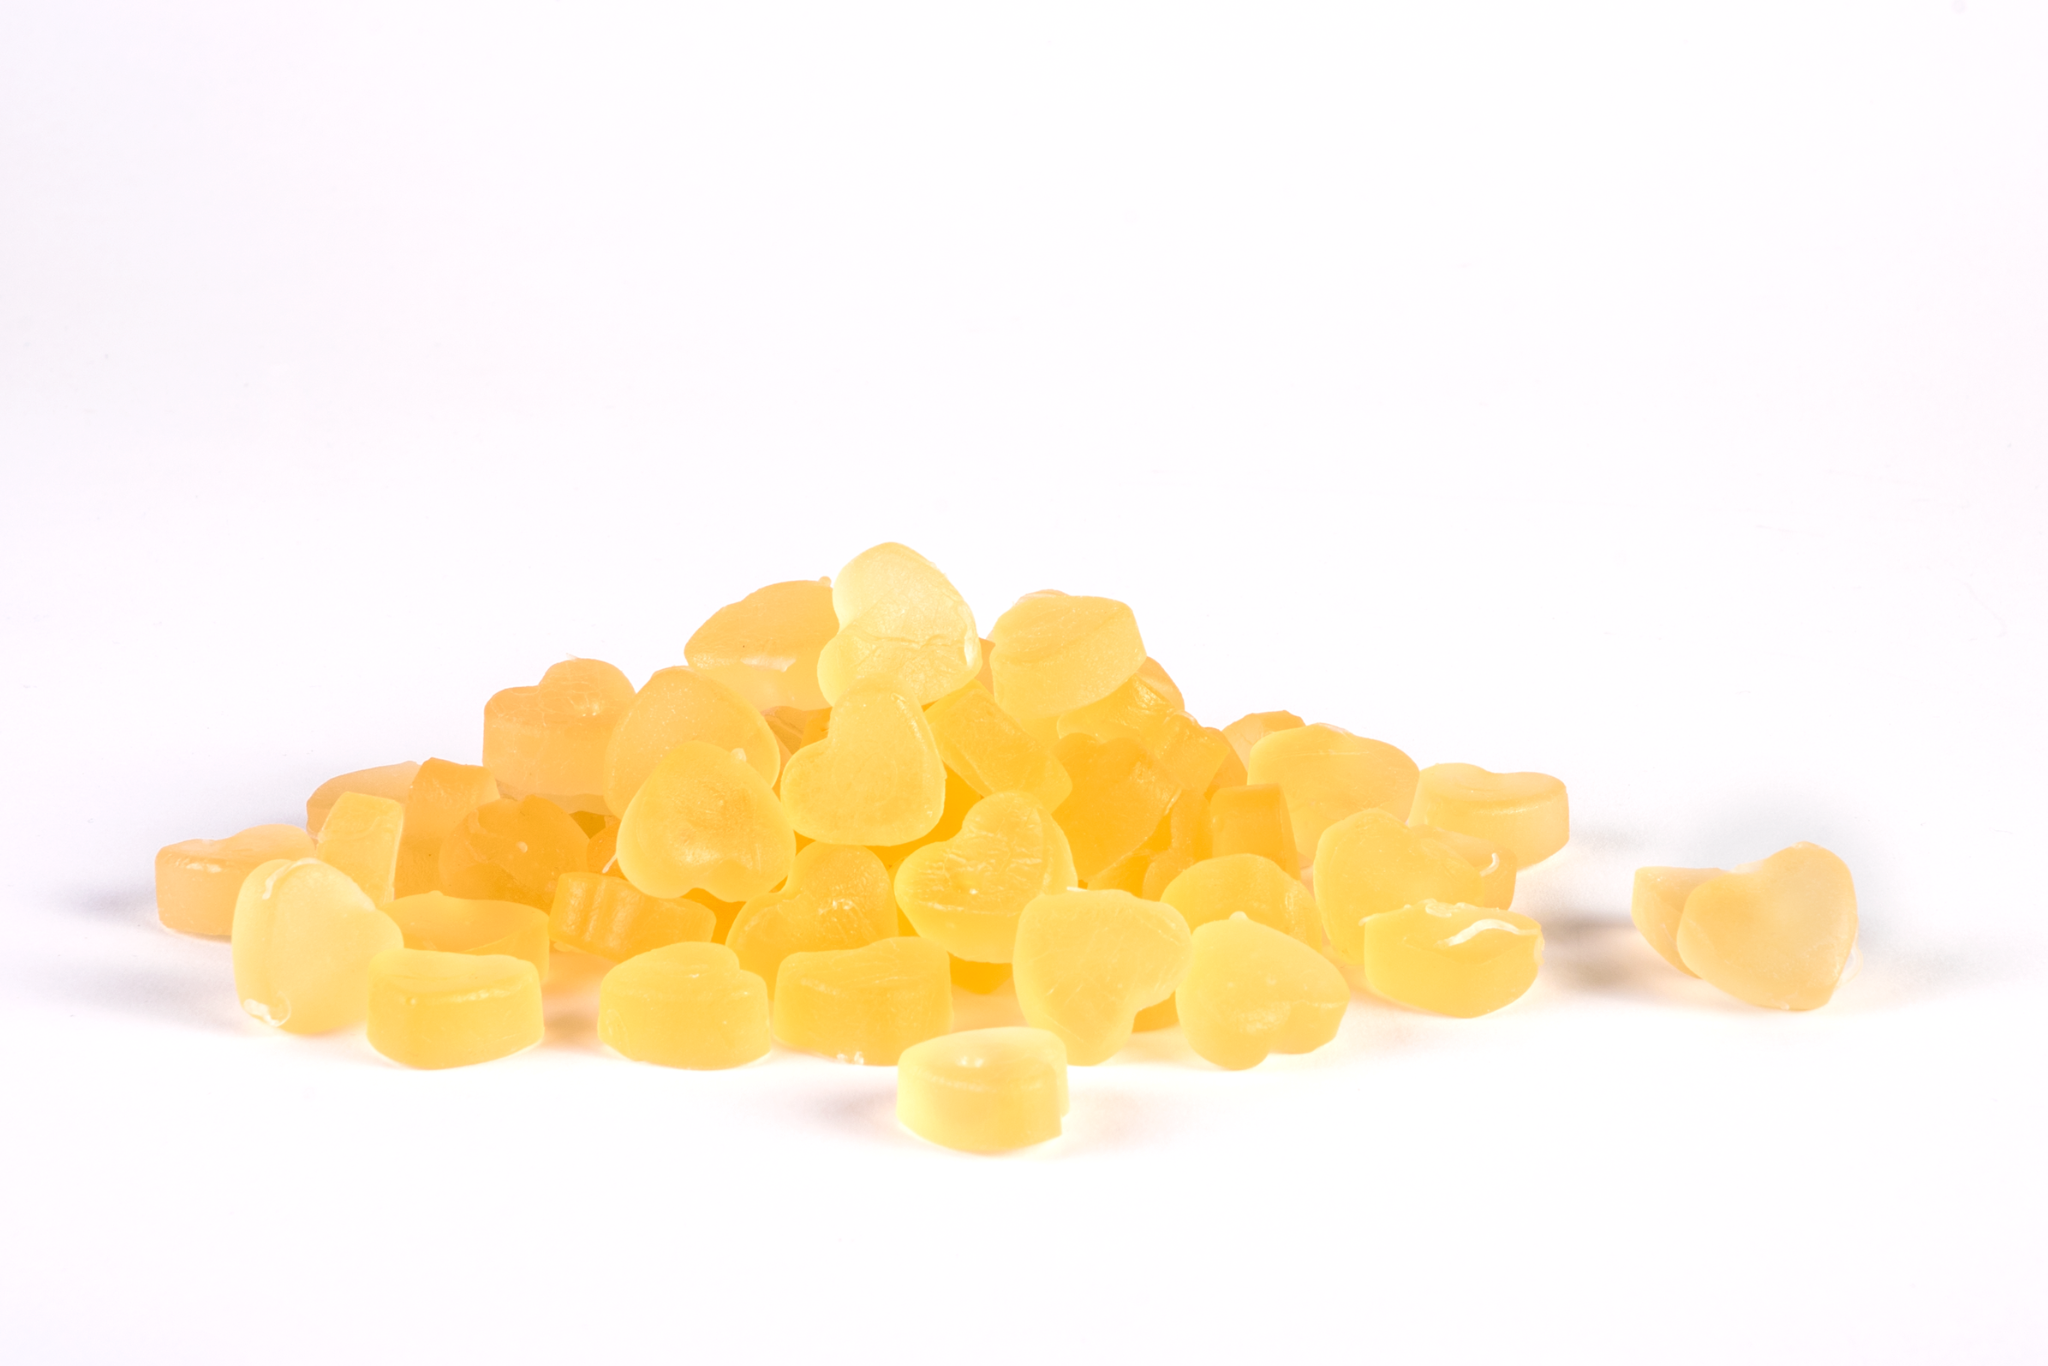 Close-up delle gomme masticabili Gummyvit Vitamin D, evidenziando la loro forma invitante e il colore che richiama la luminosità e il calore solare, simbolo dell'origine naturale della vitamina D